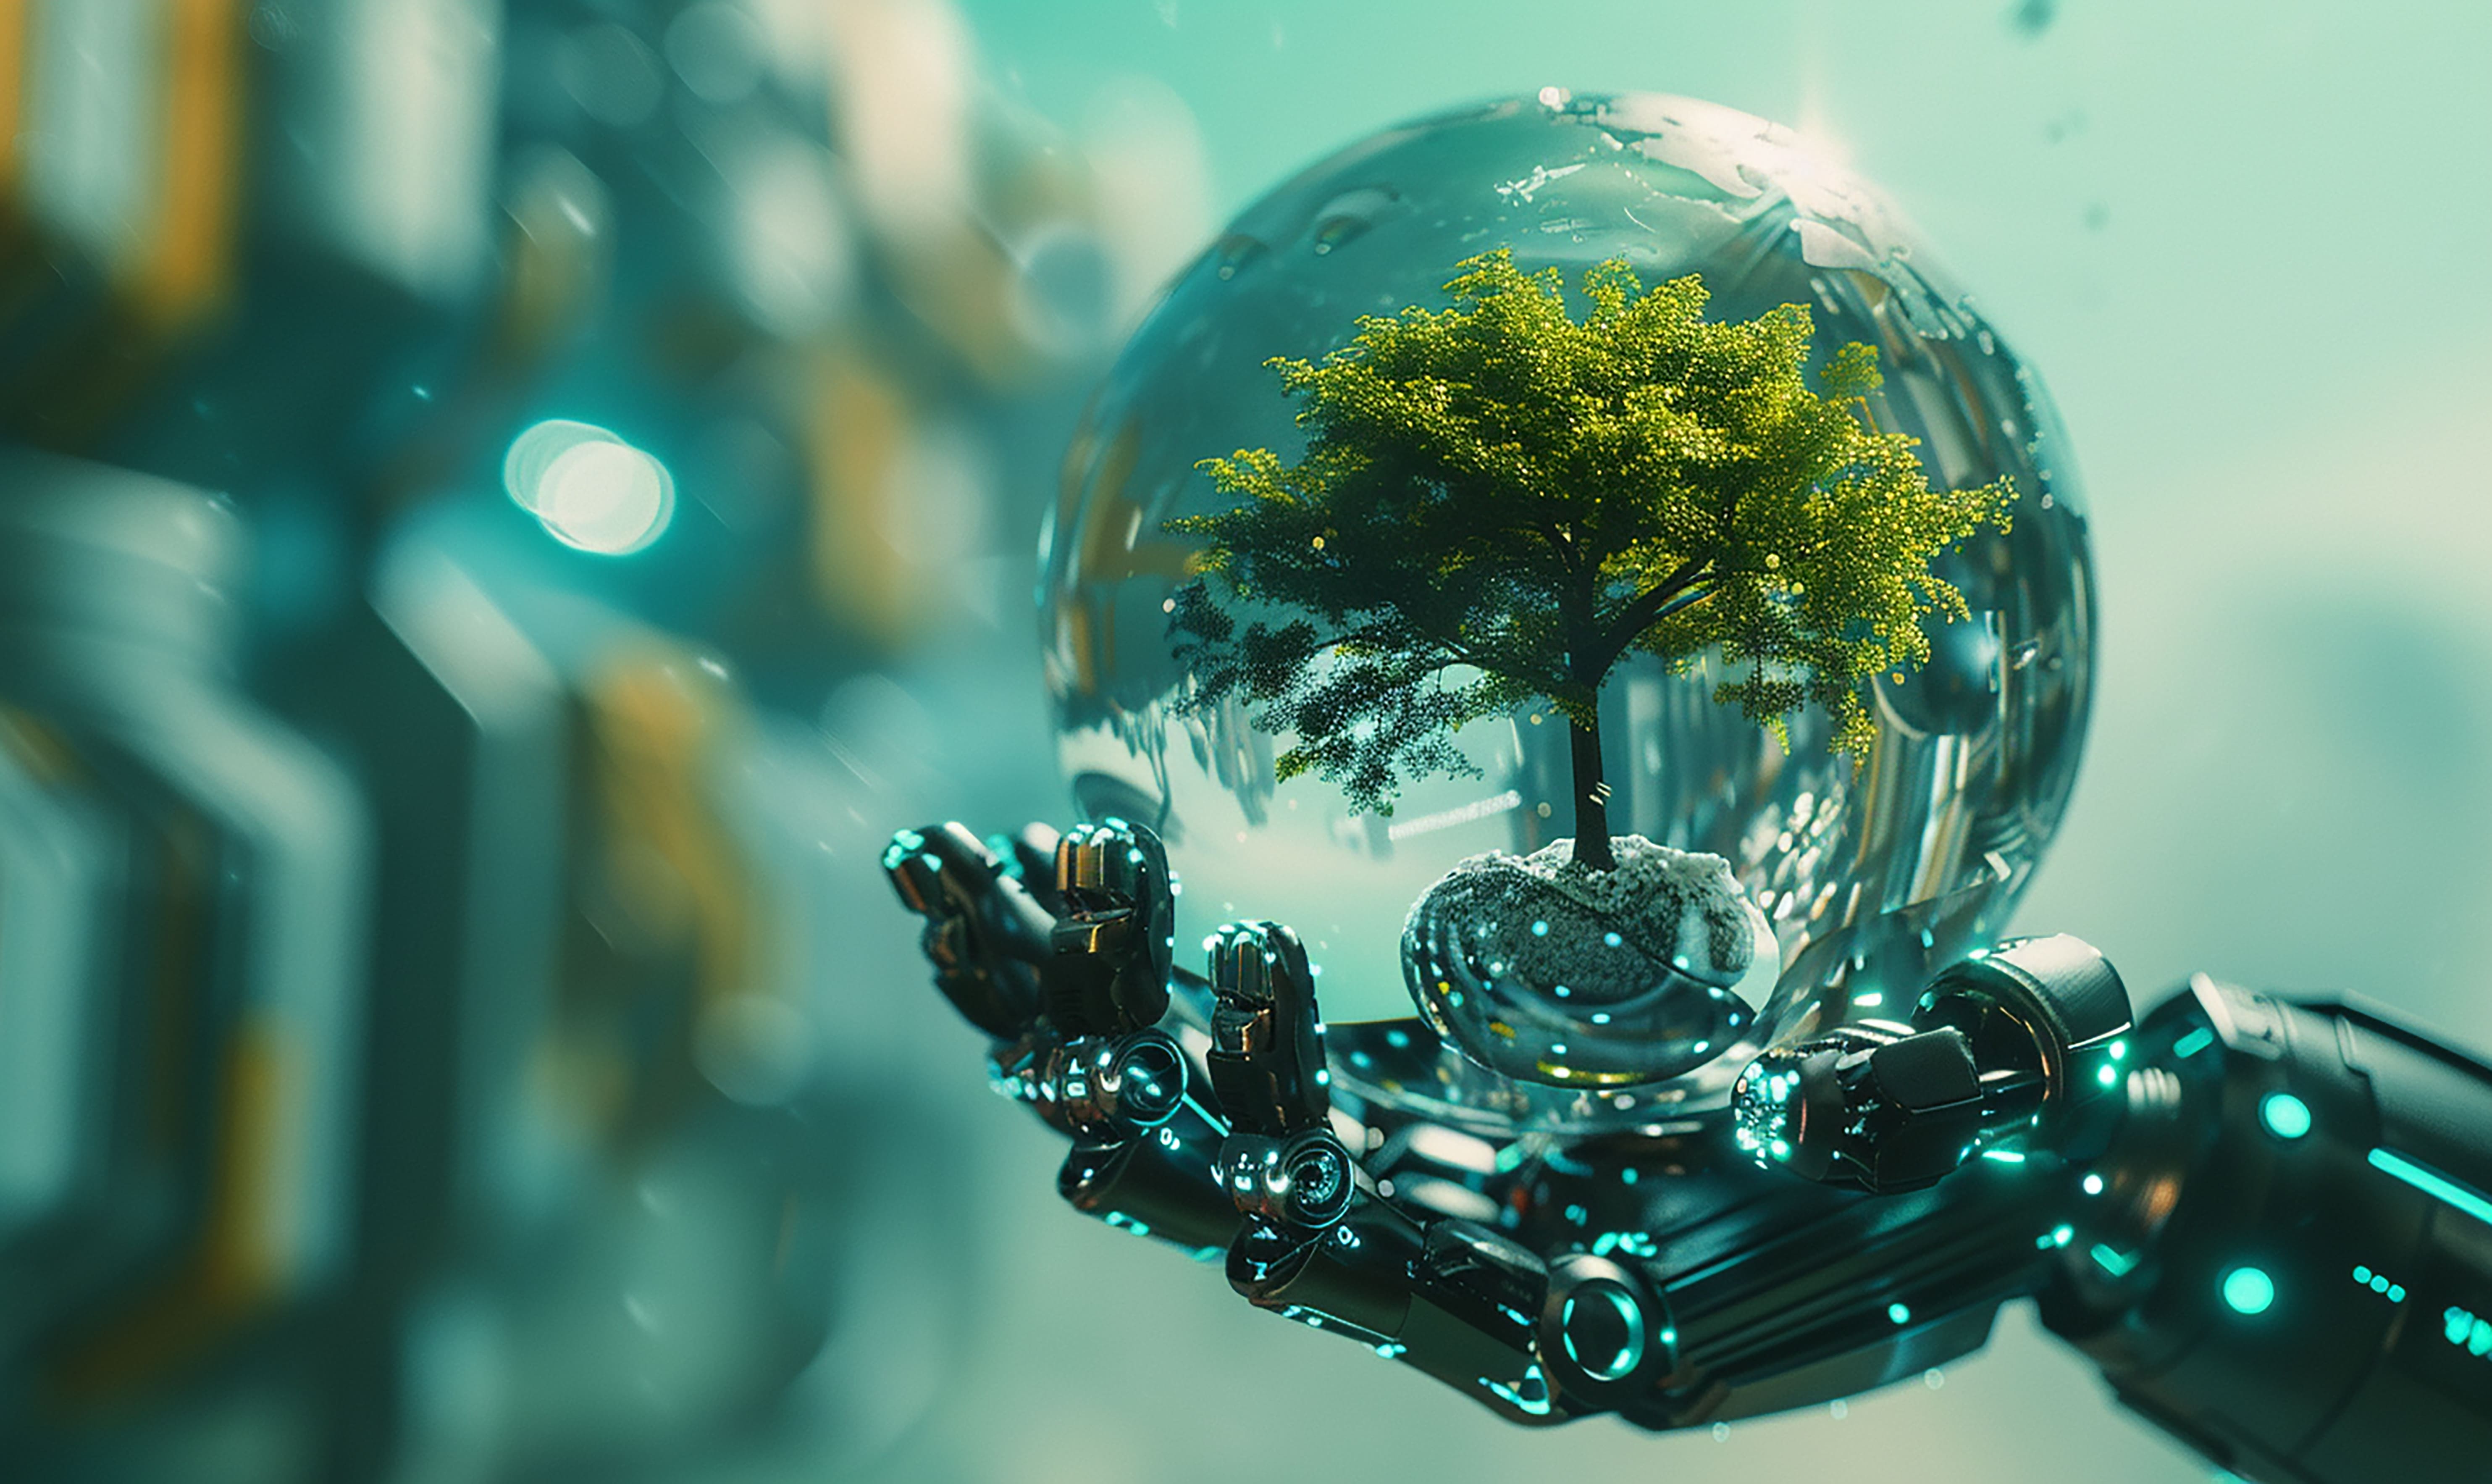 Imagem criada por IA que mostra a mão de um robô segurando uma esfera de vidro, que dentro contem uma árvore com caule marrom e folhas verdes.